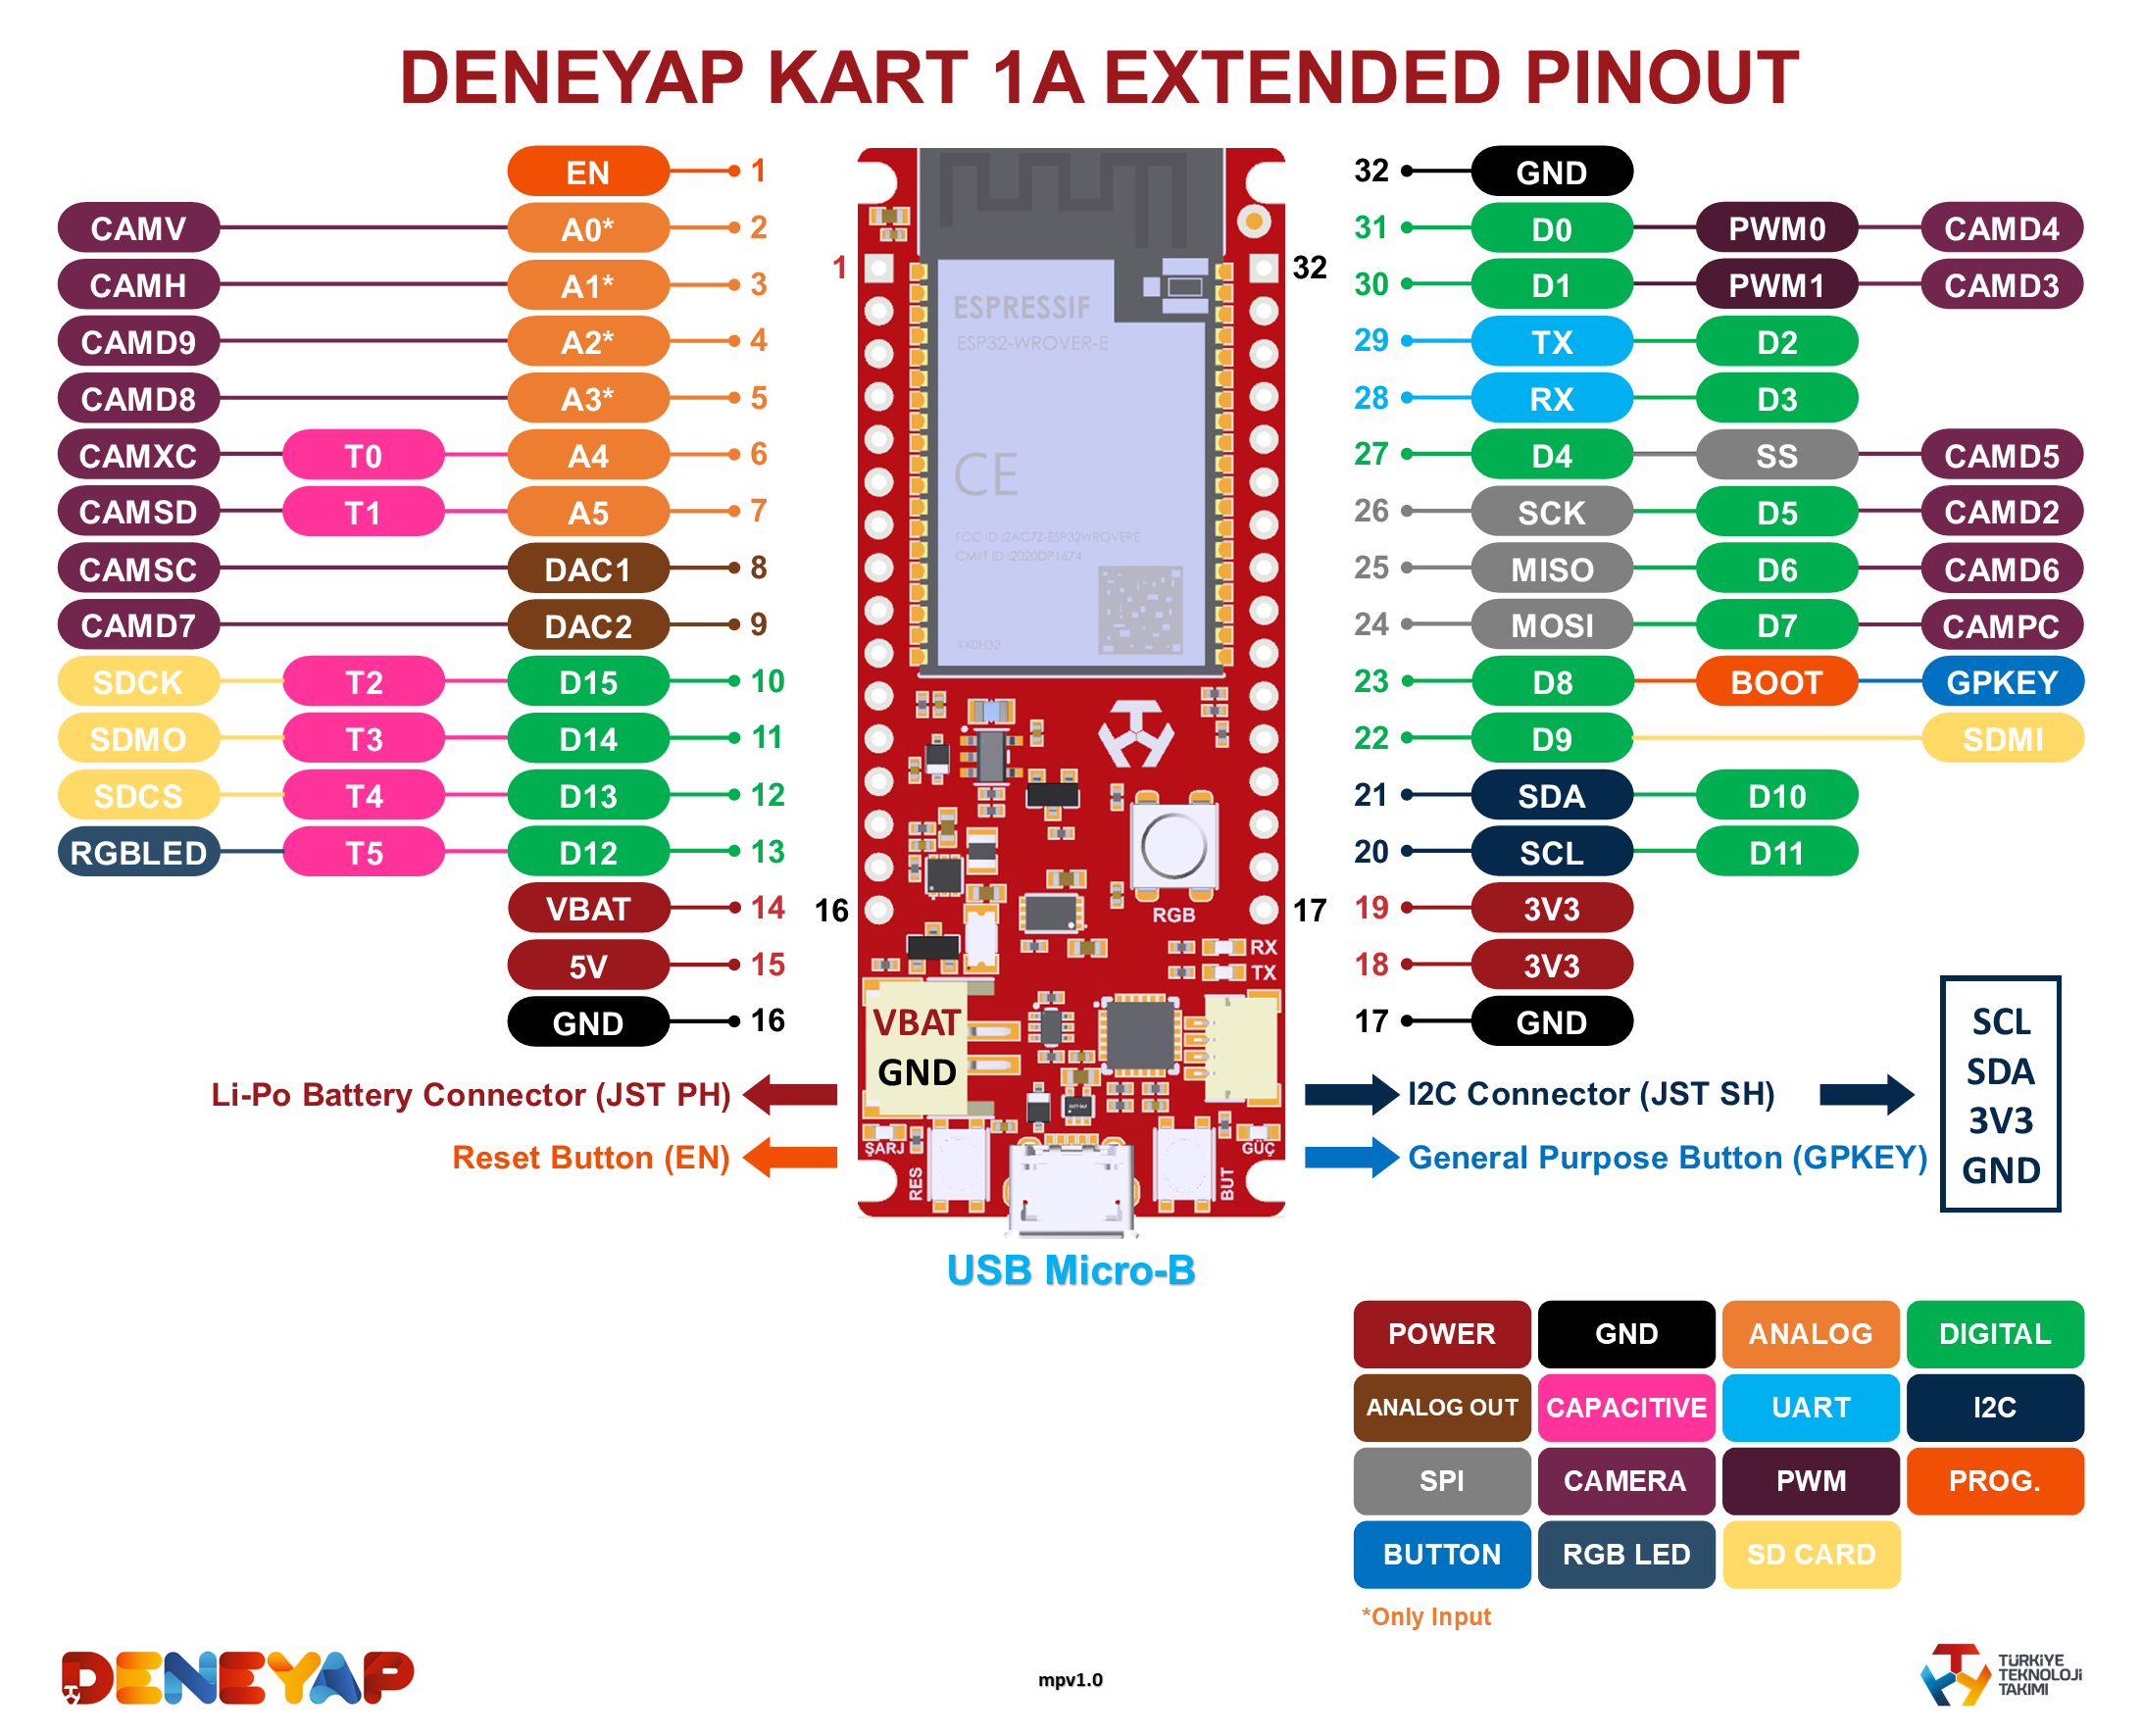 DeneyapKart1A_ExtendedPinOutEng_mpv1.0.png